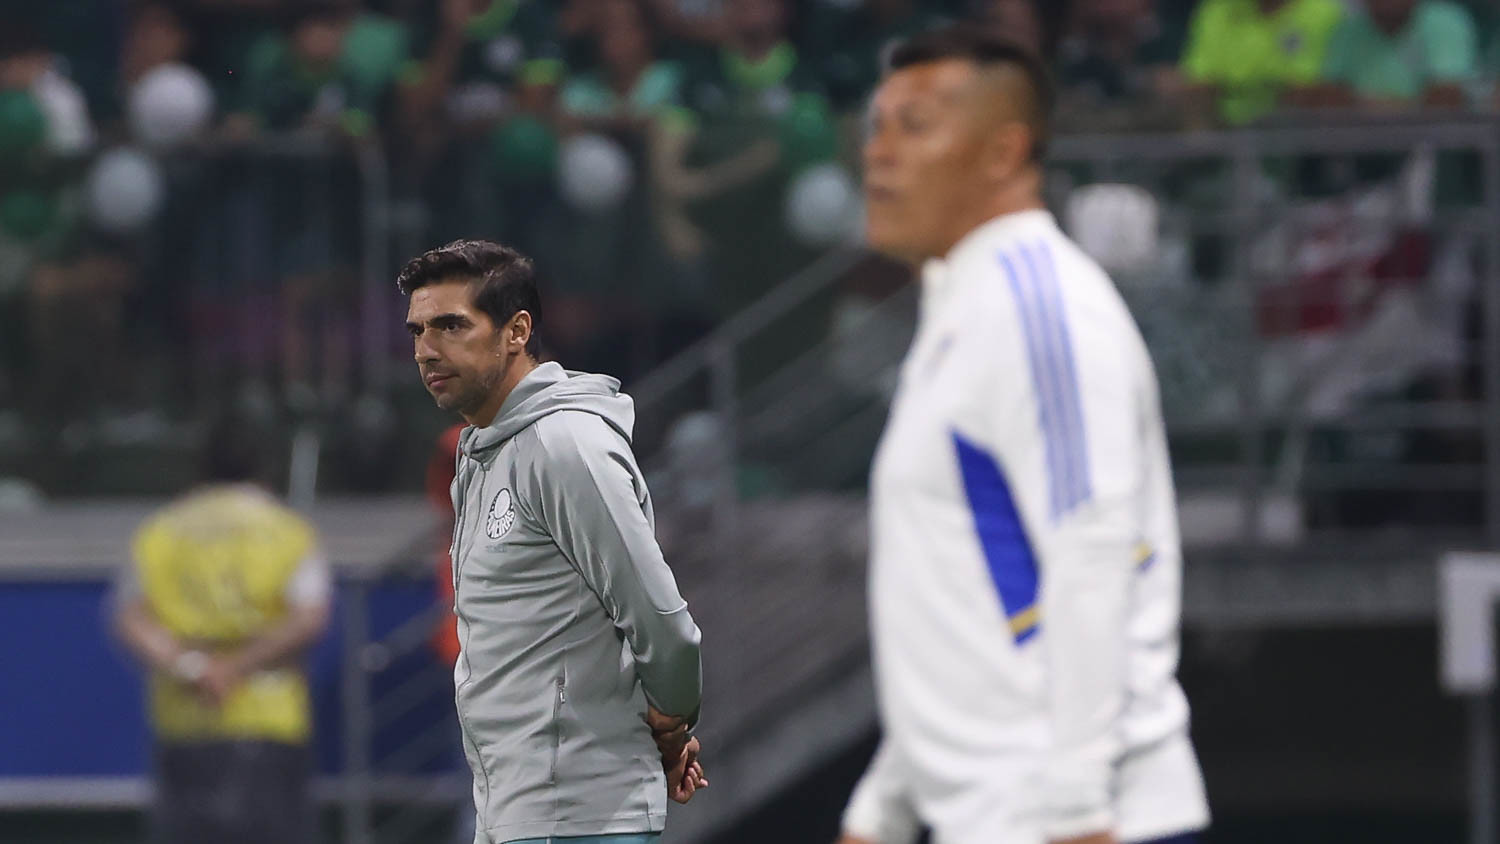 Palmeiras perde nos pênaltis, e Boca Juniors vai à final da Libertadores